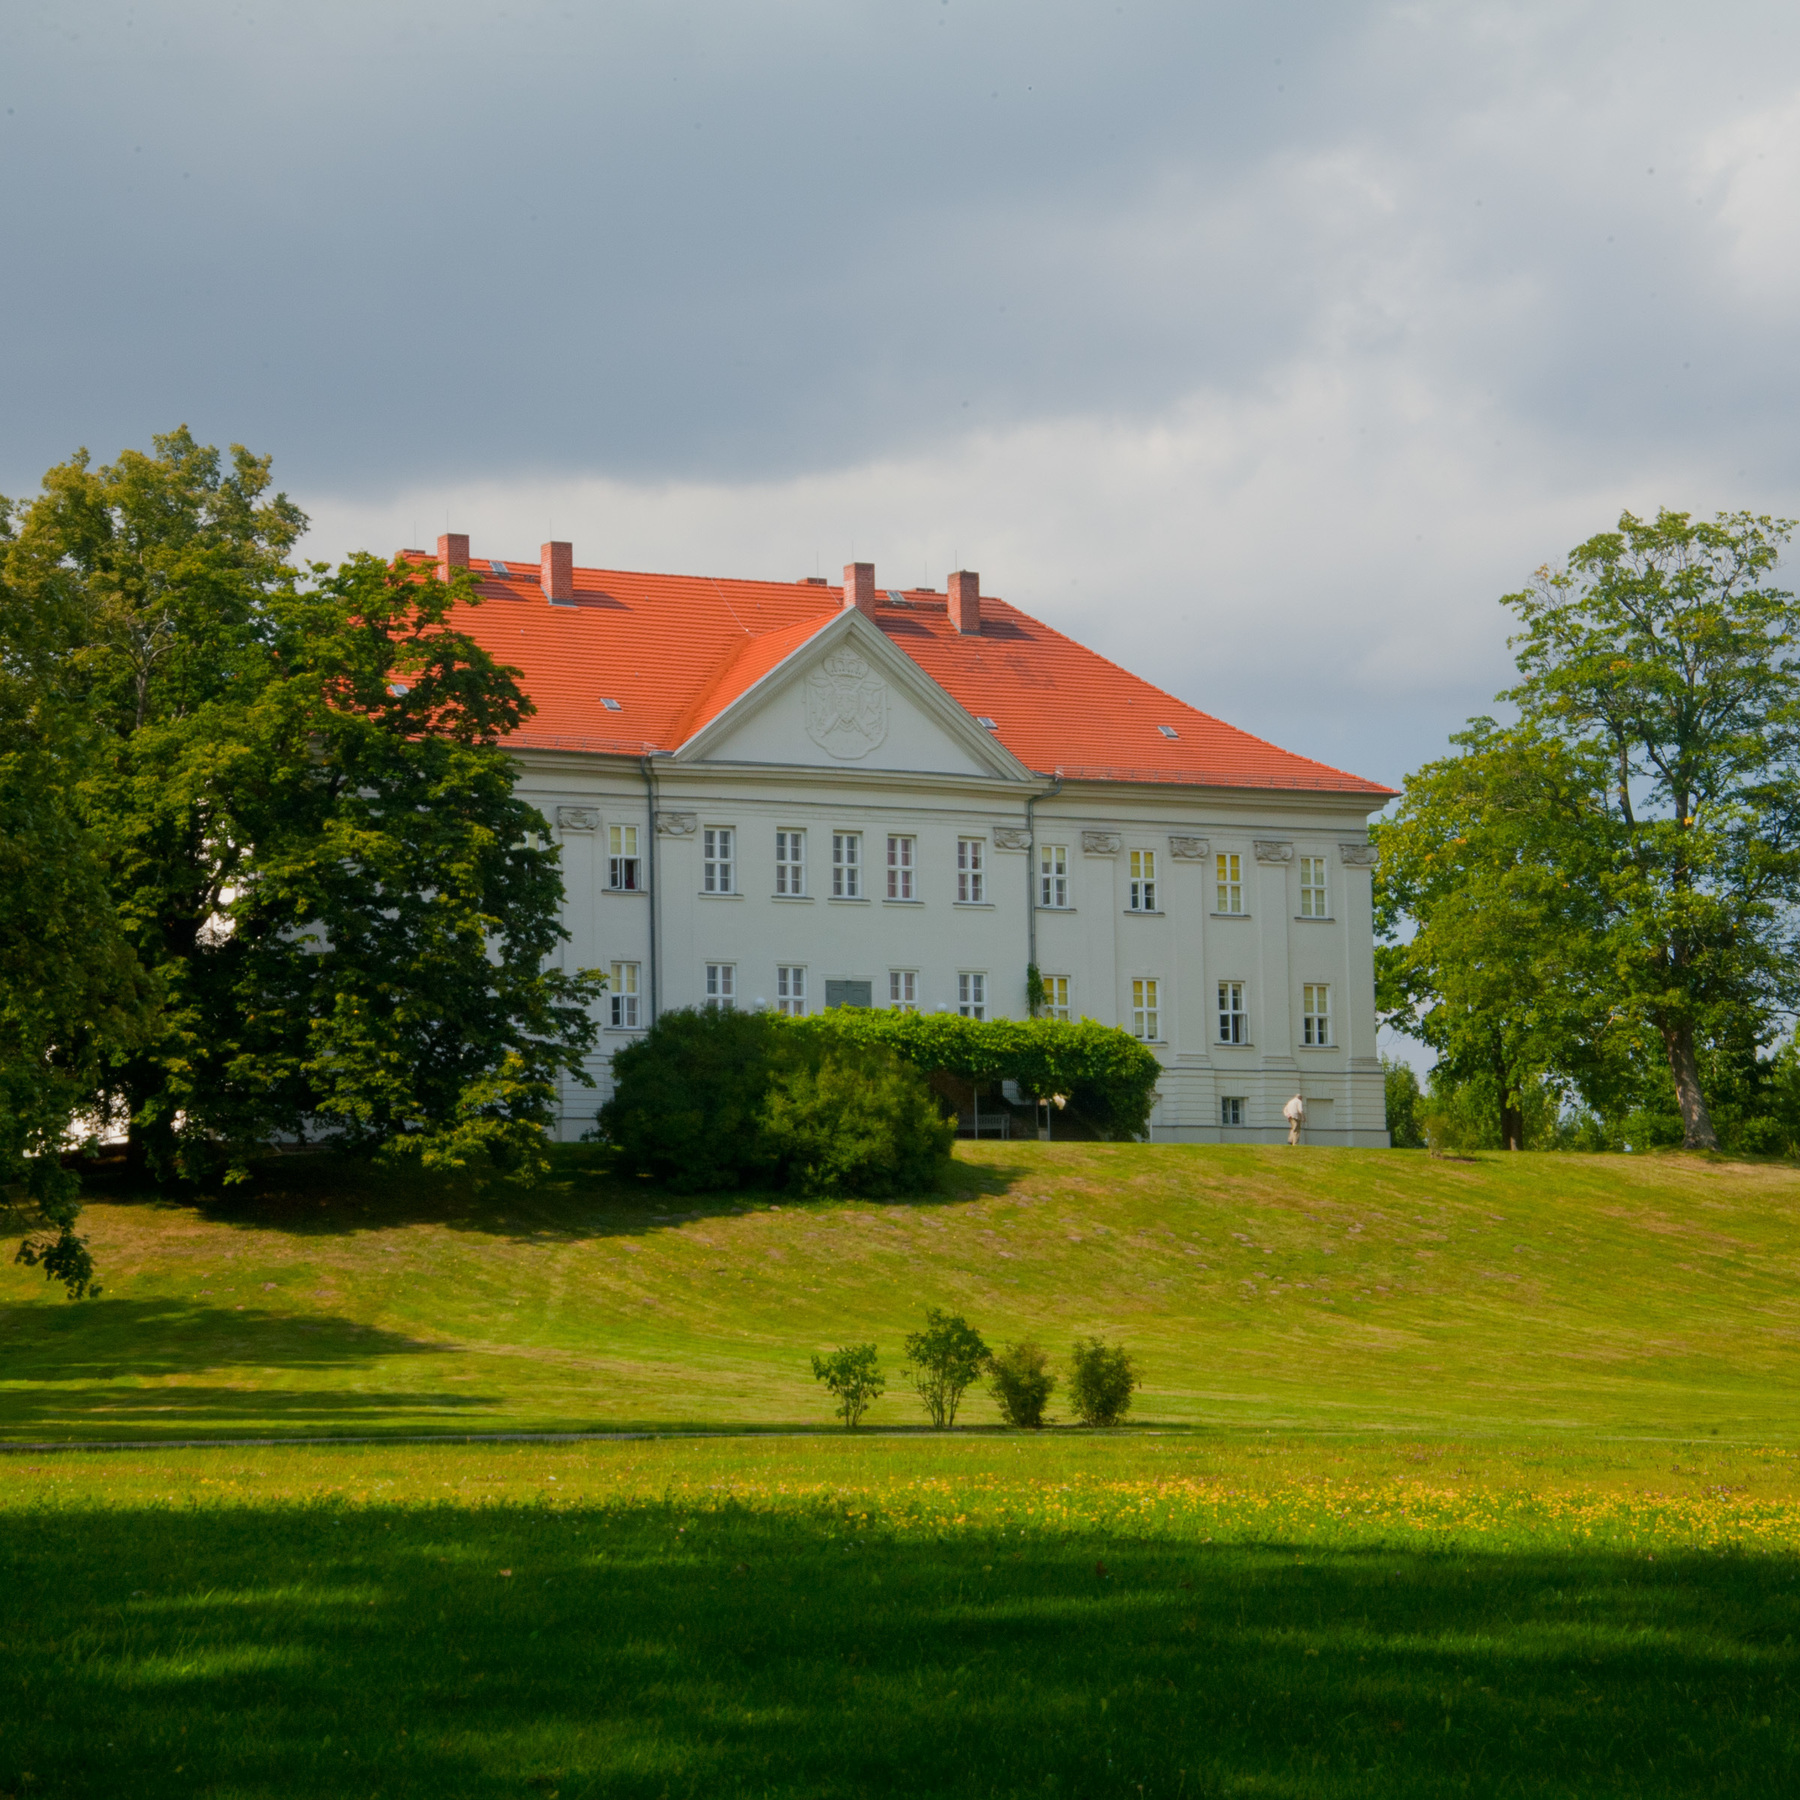 Blick auf das Schloss Hohenzieritz vom Landschaftsgarten nach englischem Vorbild auf der Rückseite des Schlosses angelegt. © 2017 Betrieb für Bau und Liegenschaften Mecklenburg-Vorpommern